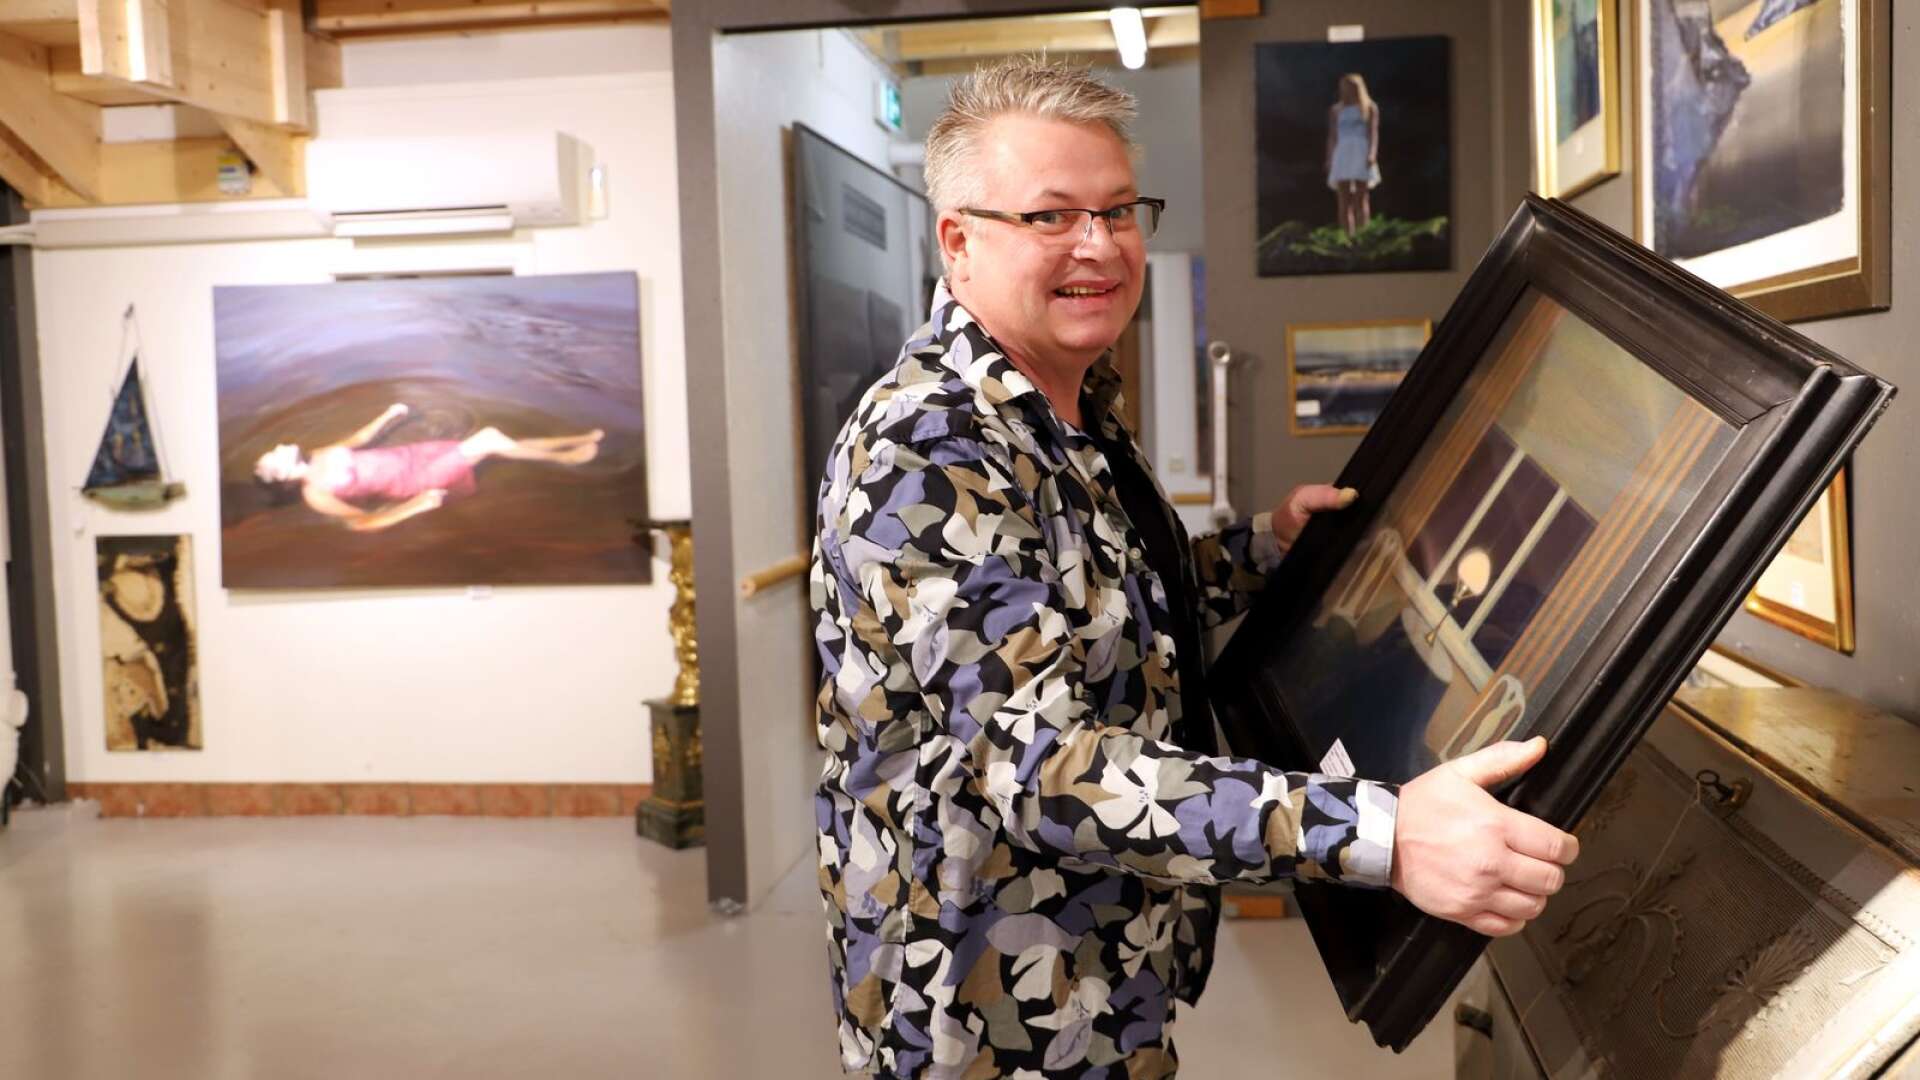 Peter Pettersson på Auktionsverket i Karlstad laddar för kvalitetsauktion där ett verk av värmlänningen Stefan Johansson sticker ut. I bakgrunden ses Karin Broos’ Cirkeln.